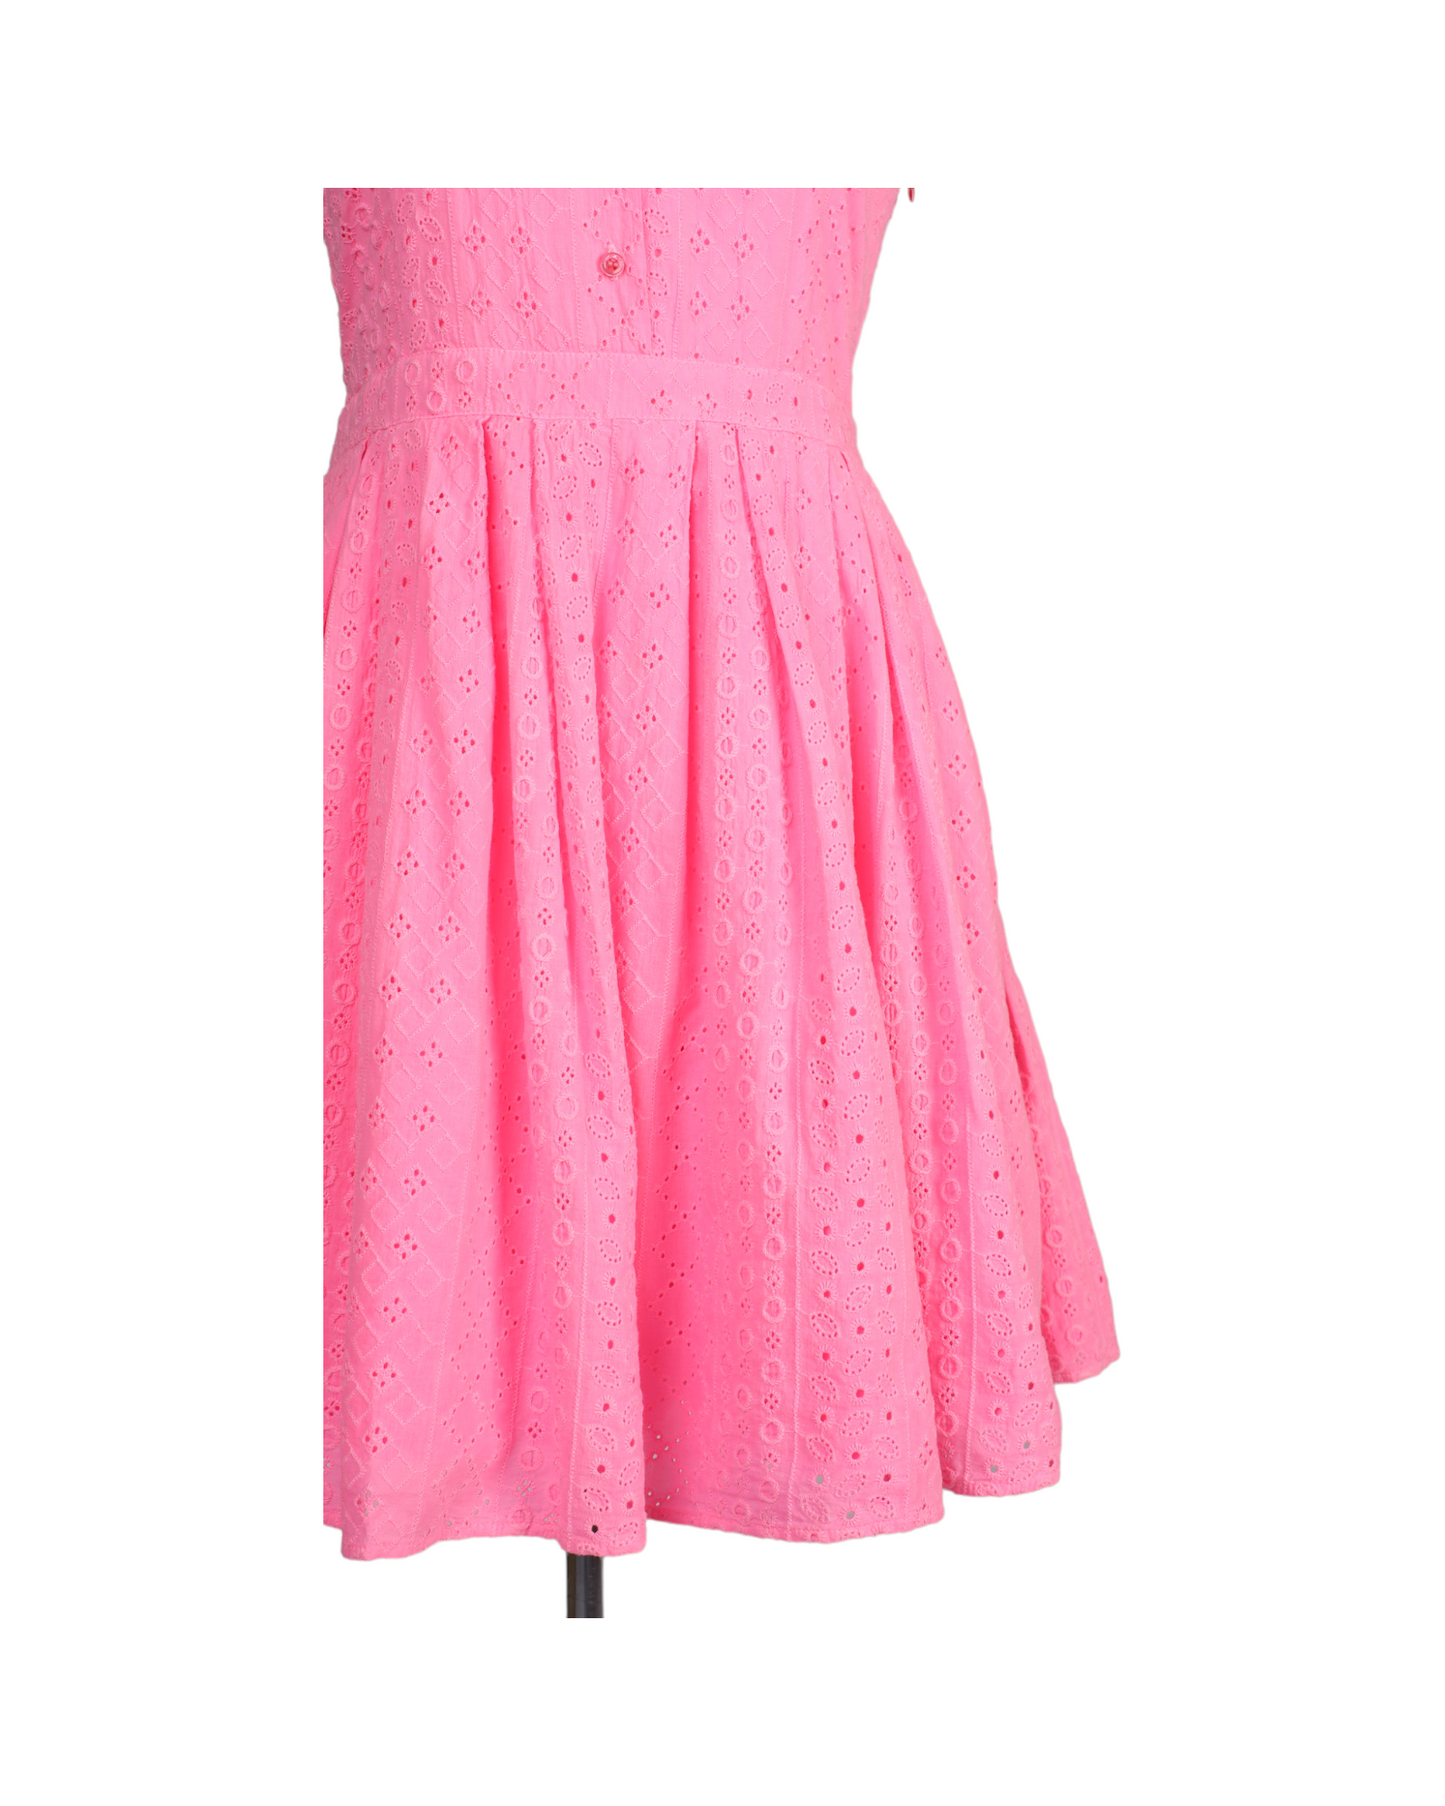 فستان قصير صيفي باللون الزهري الساطع من متجر بريجيت باردو